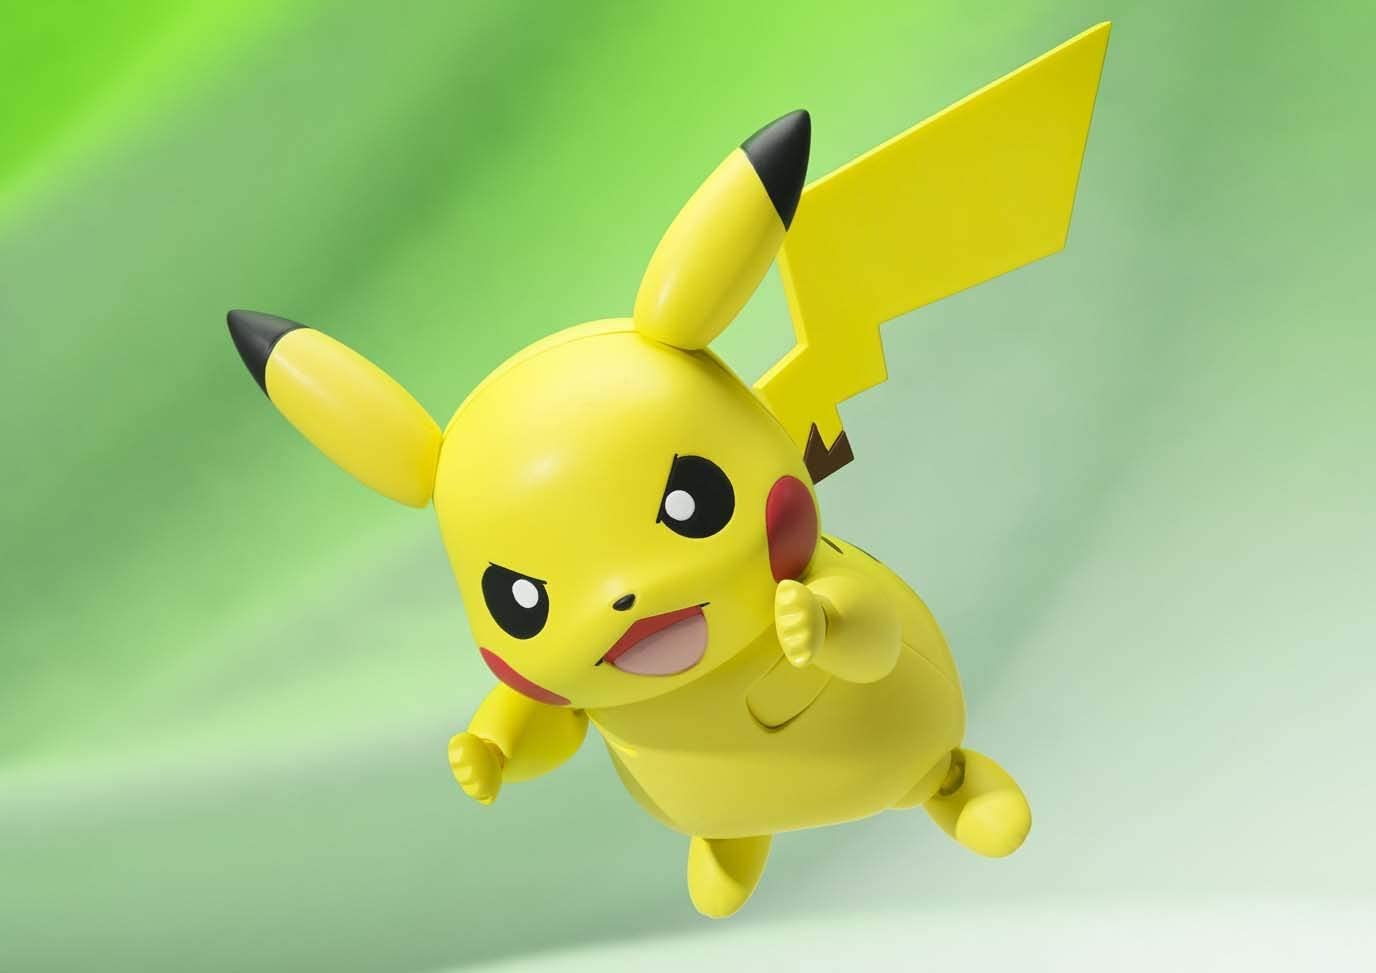 Pokemon S.H.Figuarts Action Figure - Pikachu